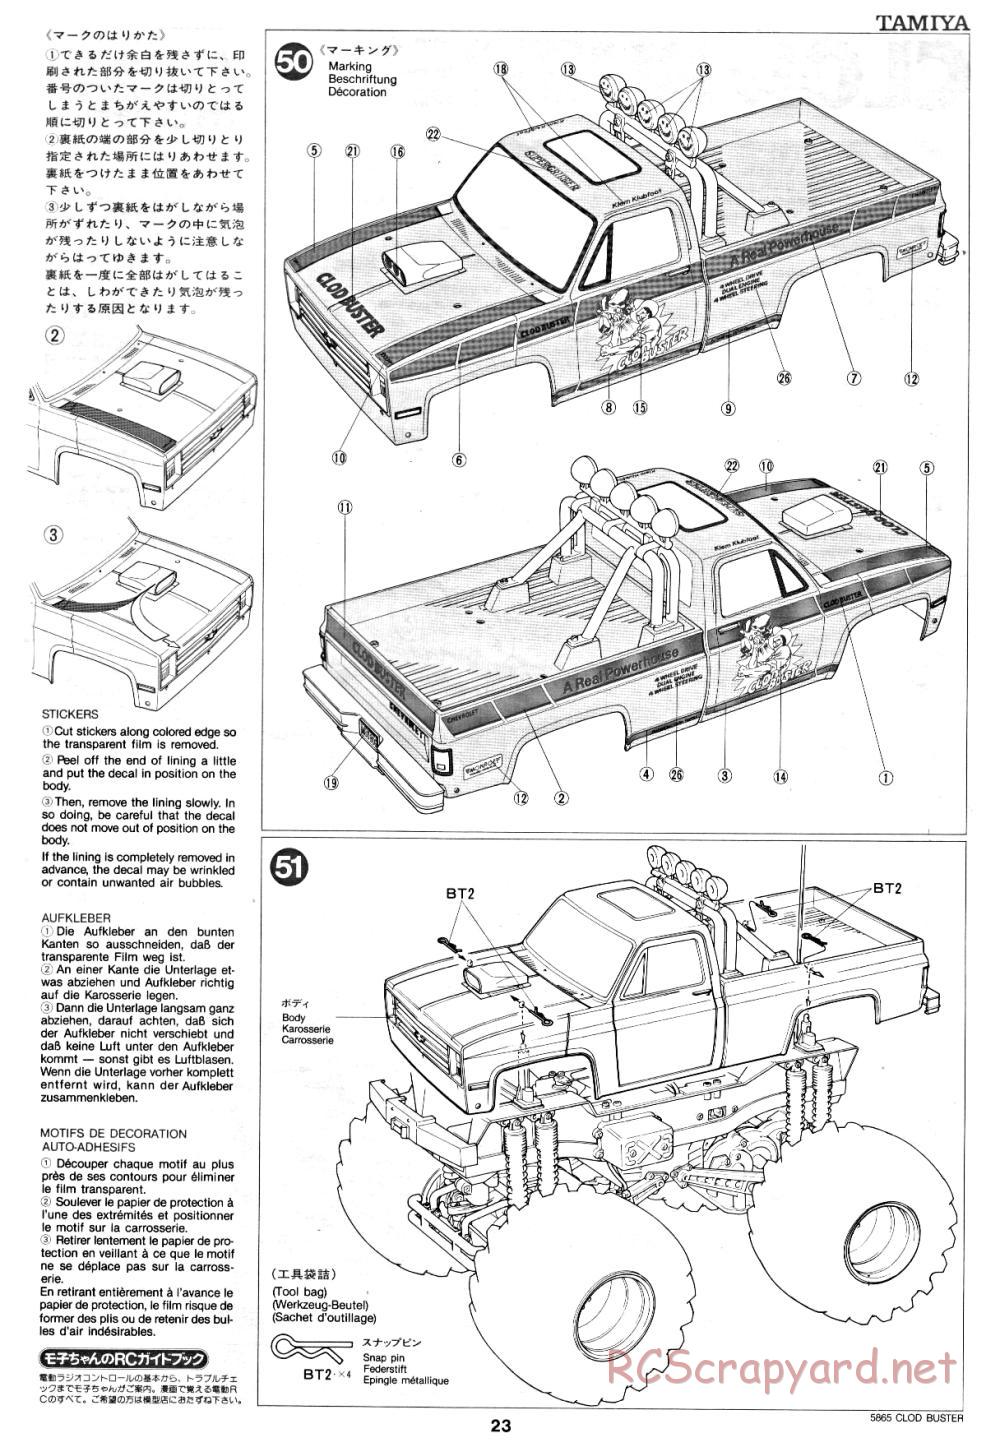 Tamiya - Clod Buster - 58065 - Manual - Page 23